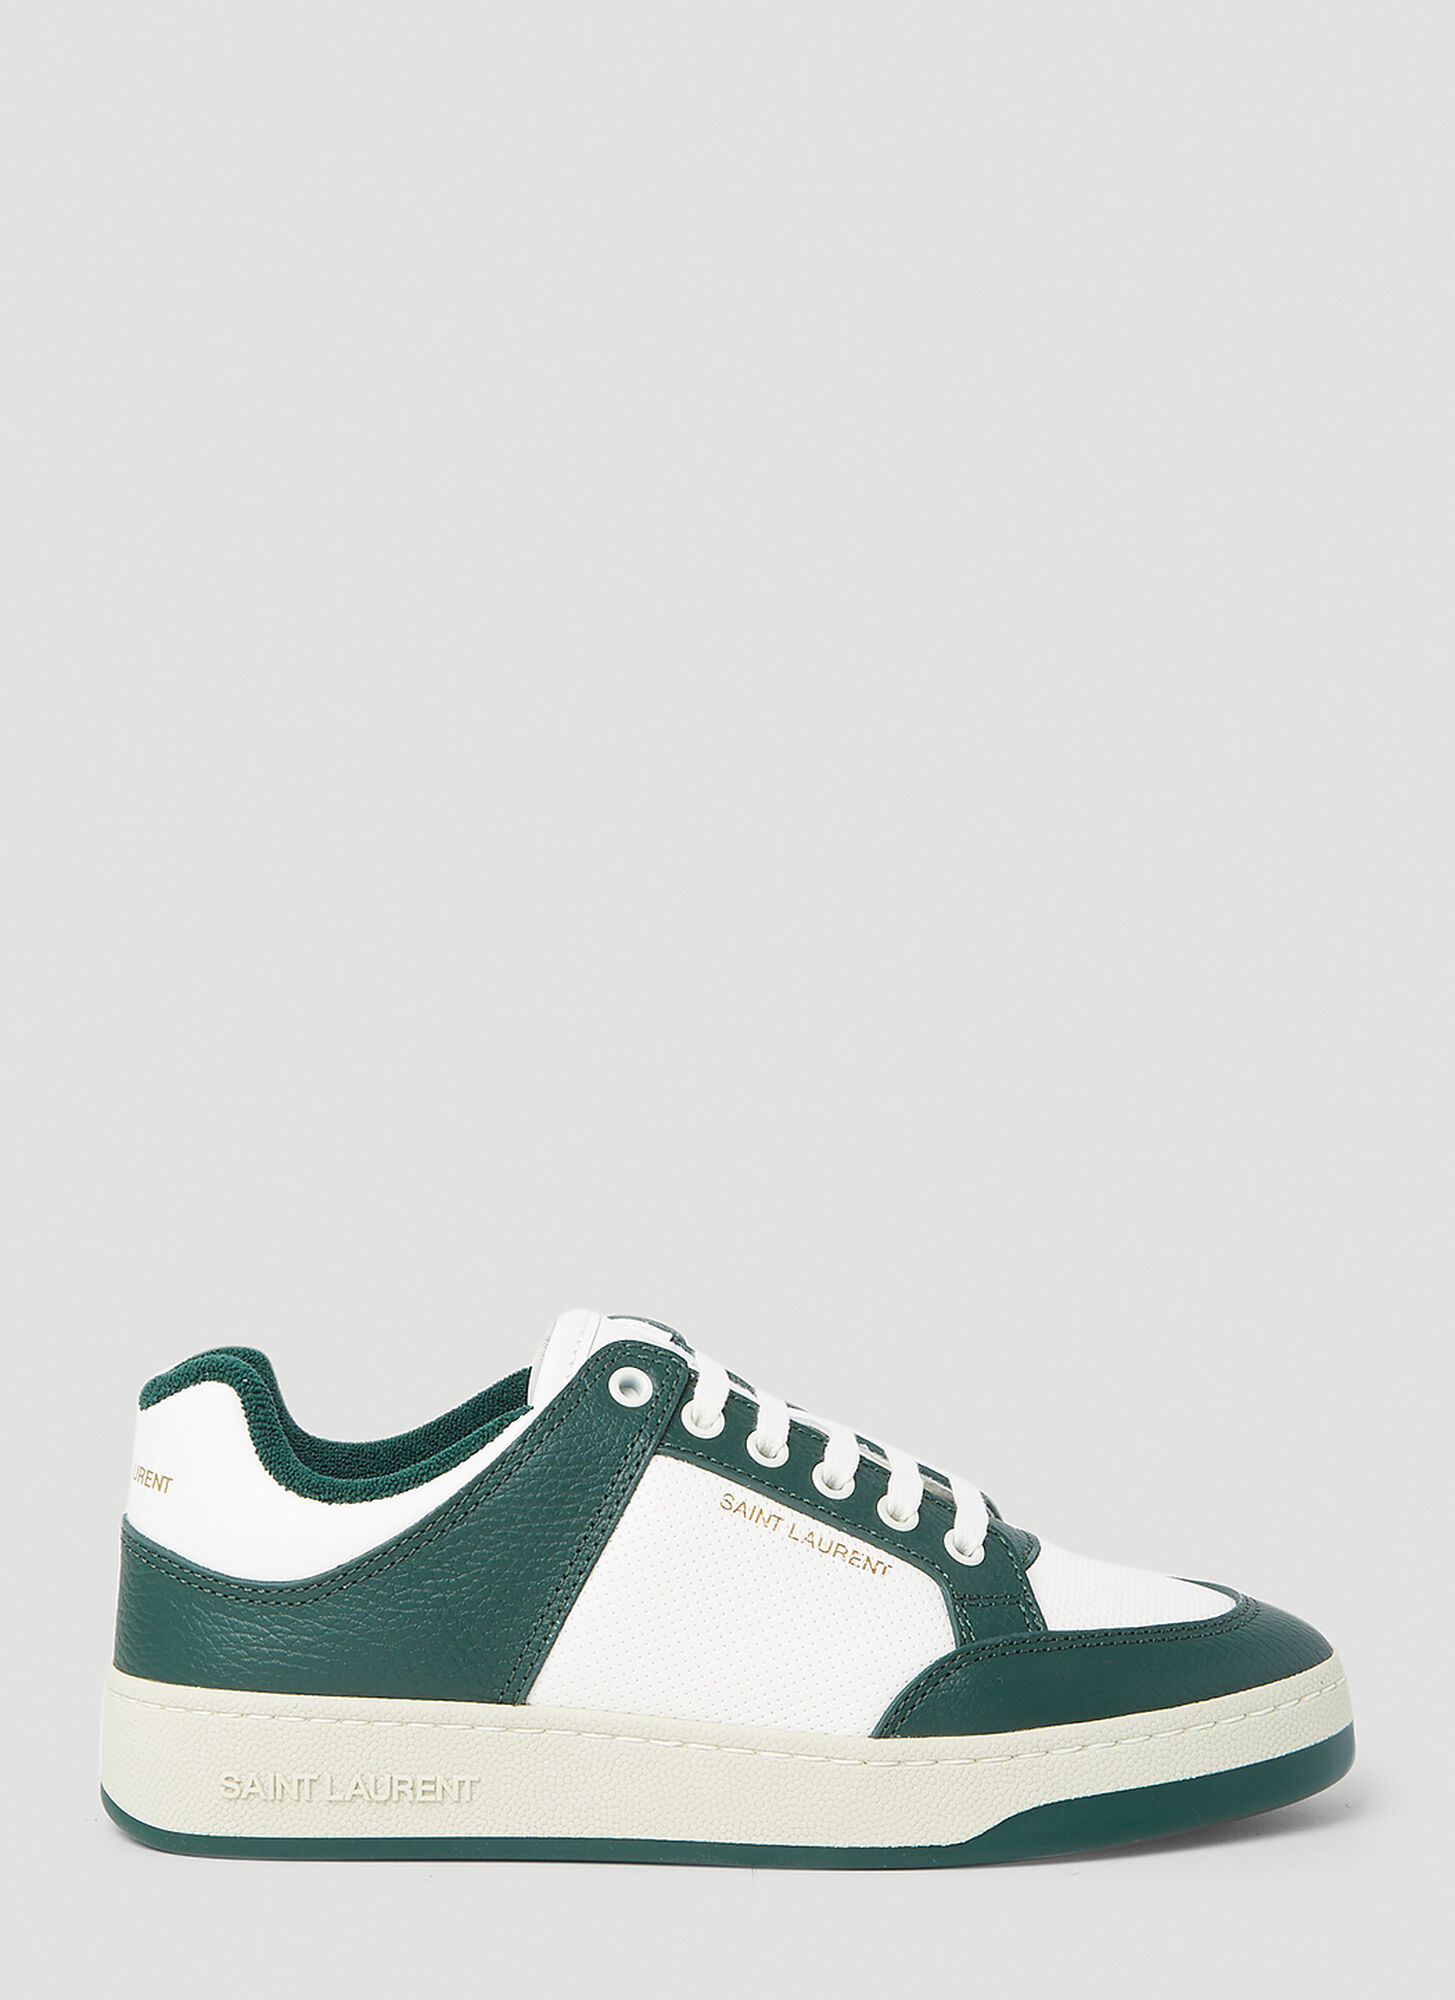 Shop Saint Laurent Sl/61 Low Top Sneakers In Green